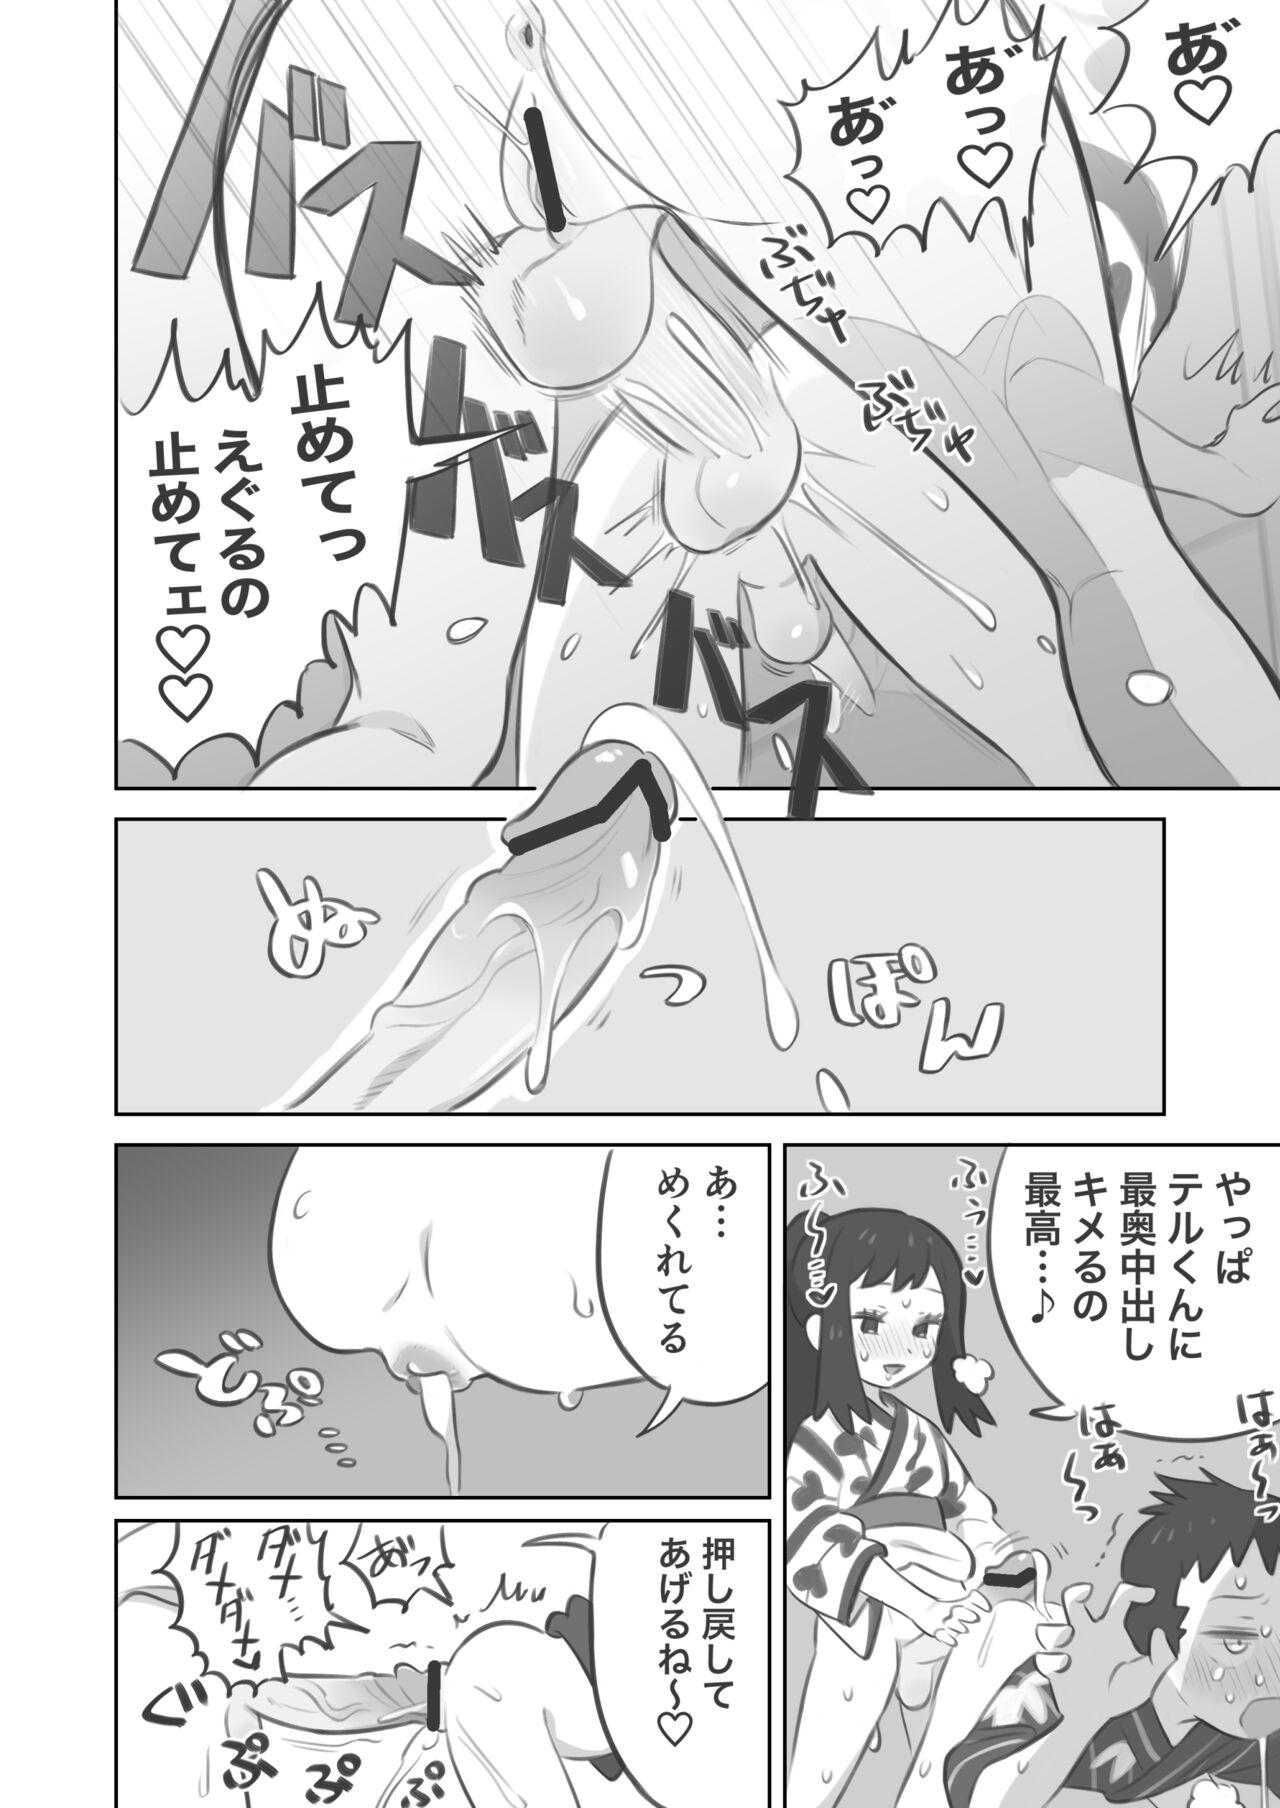 Dance Futanari shujinkō-chan ga Teru senpai o horu manga 2 - Pokemon | pocket monsters Real Orgasm - Page 10